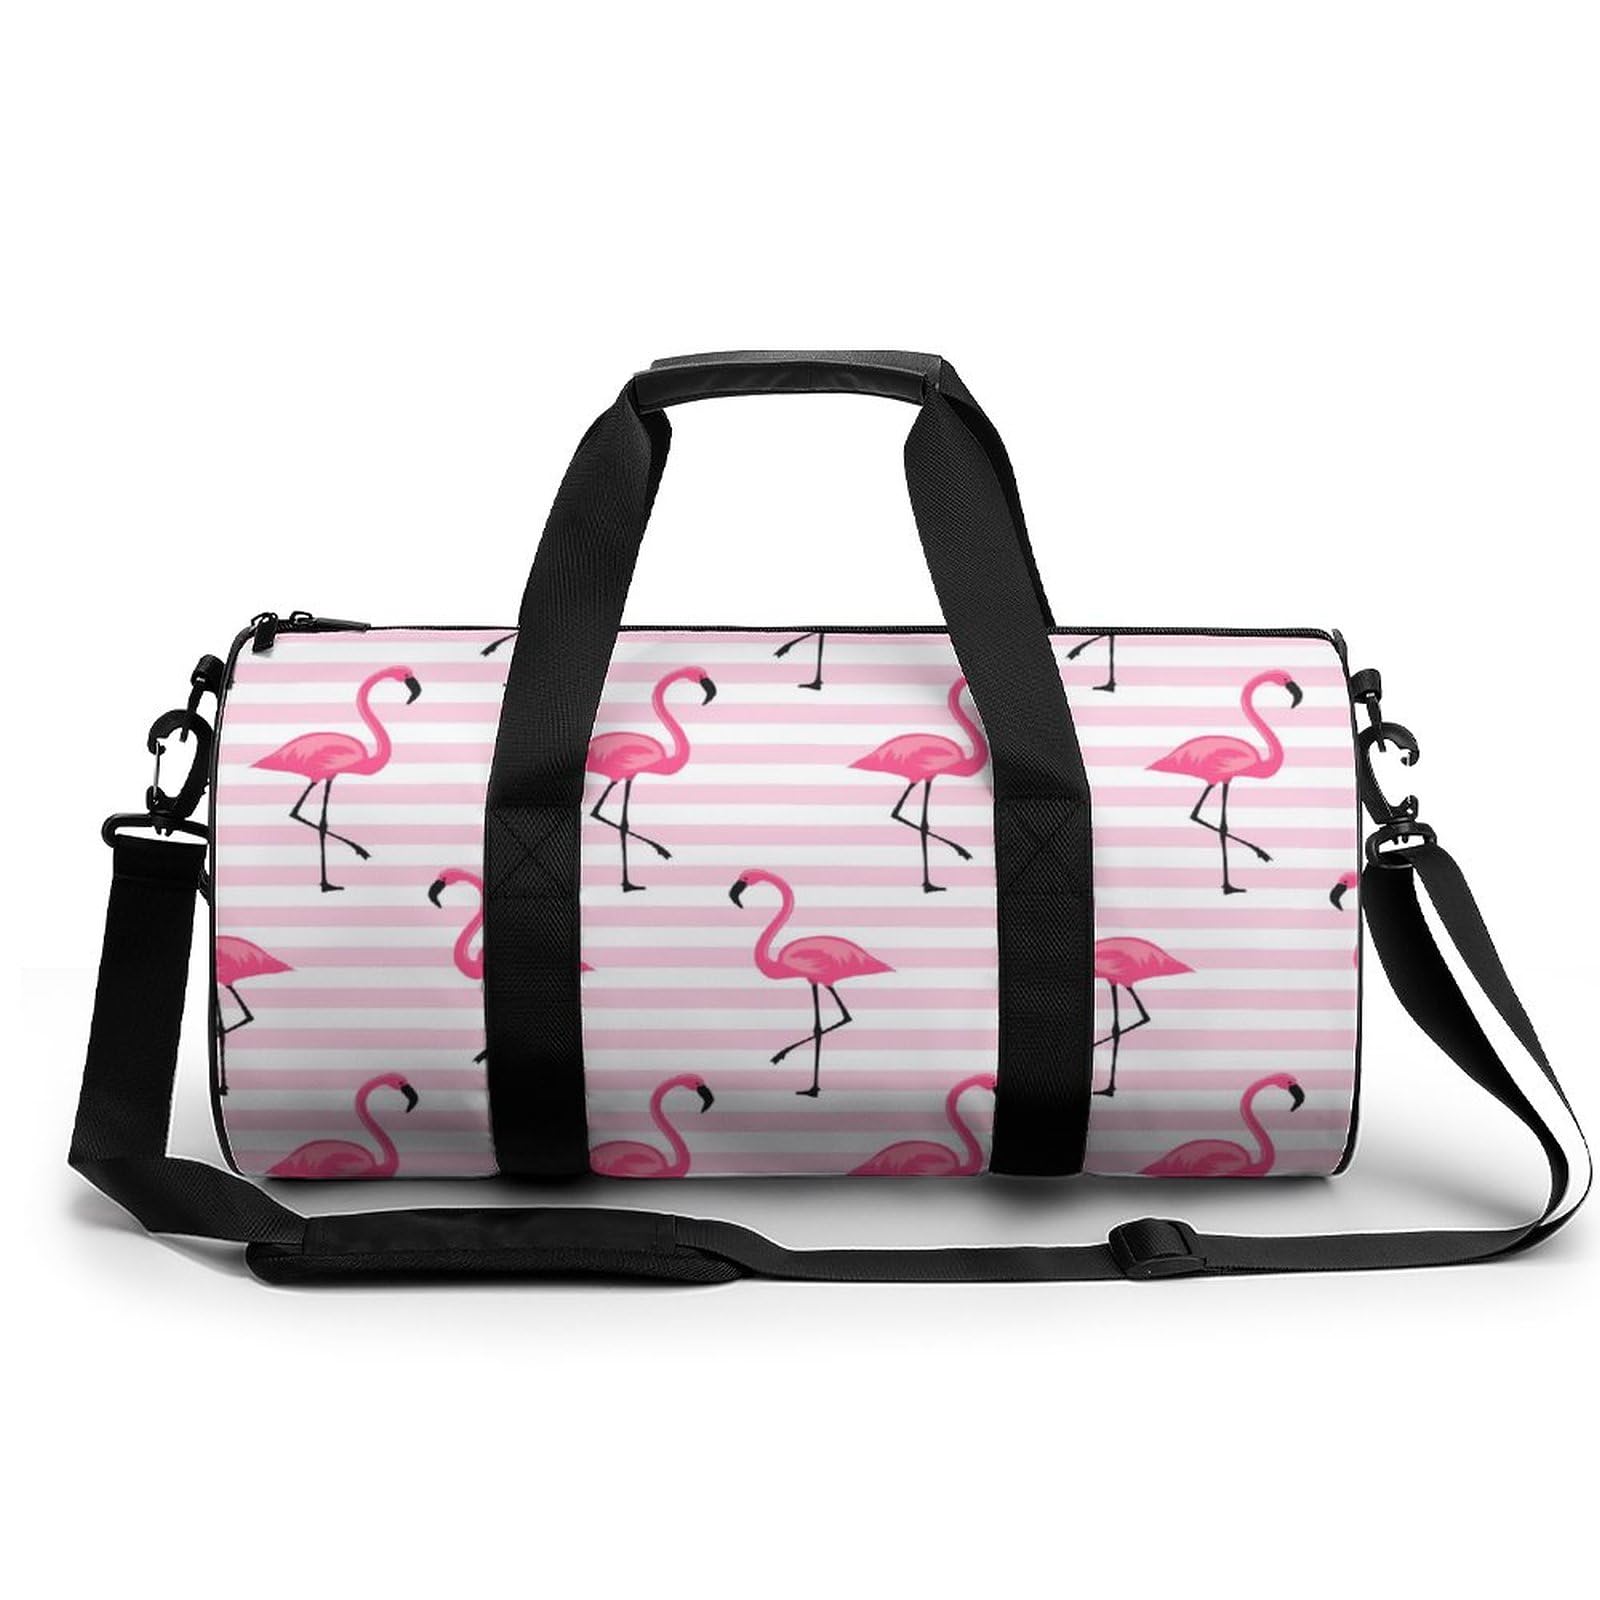 Sporttasche Rosa Flamingo Reisetasche Weekender Schwimmtasche Gym Bag Trainingstasche Für Herren Damen 45x23x23cm